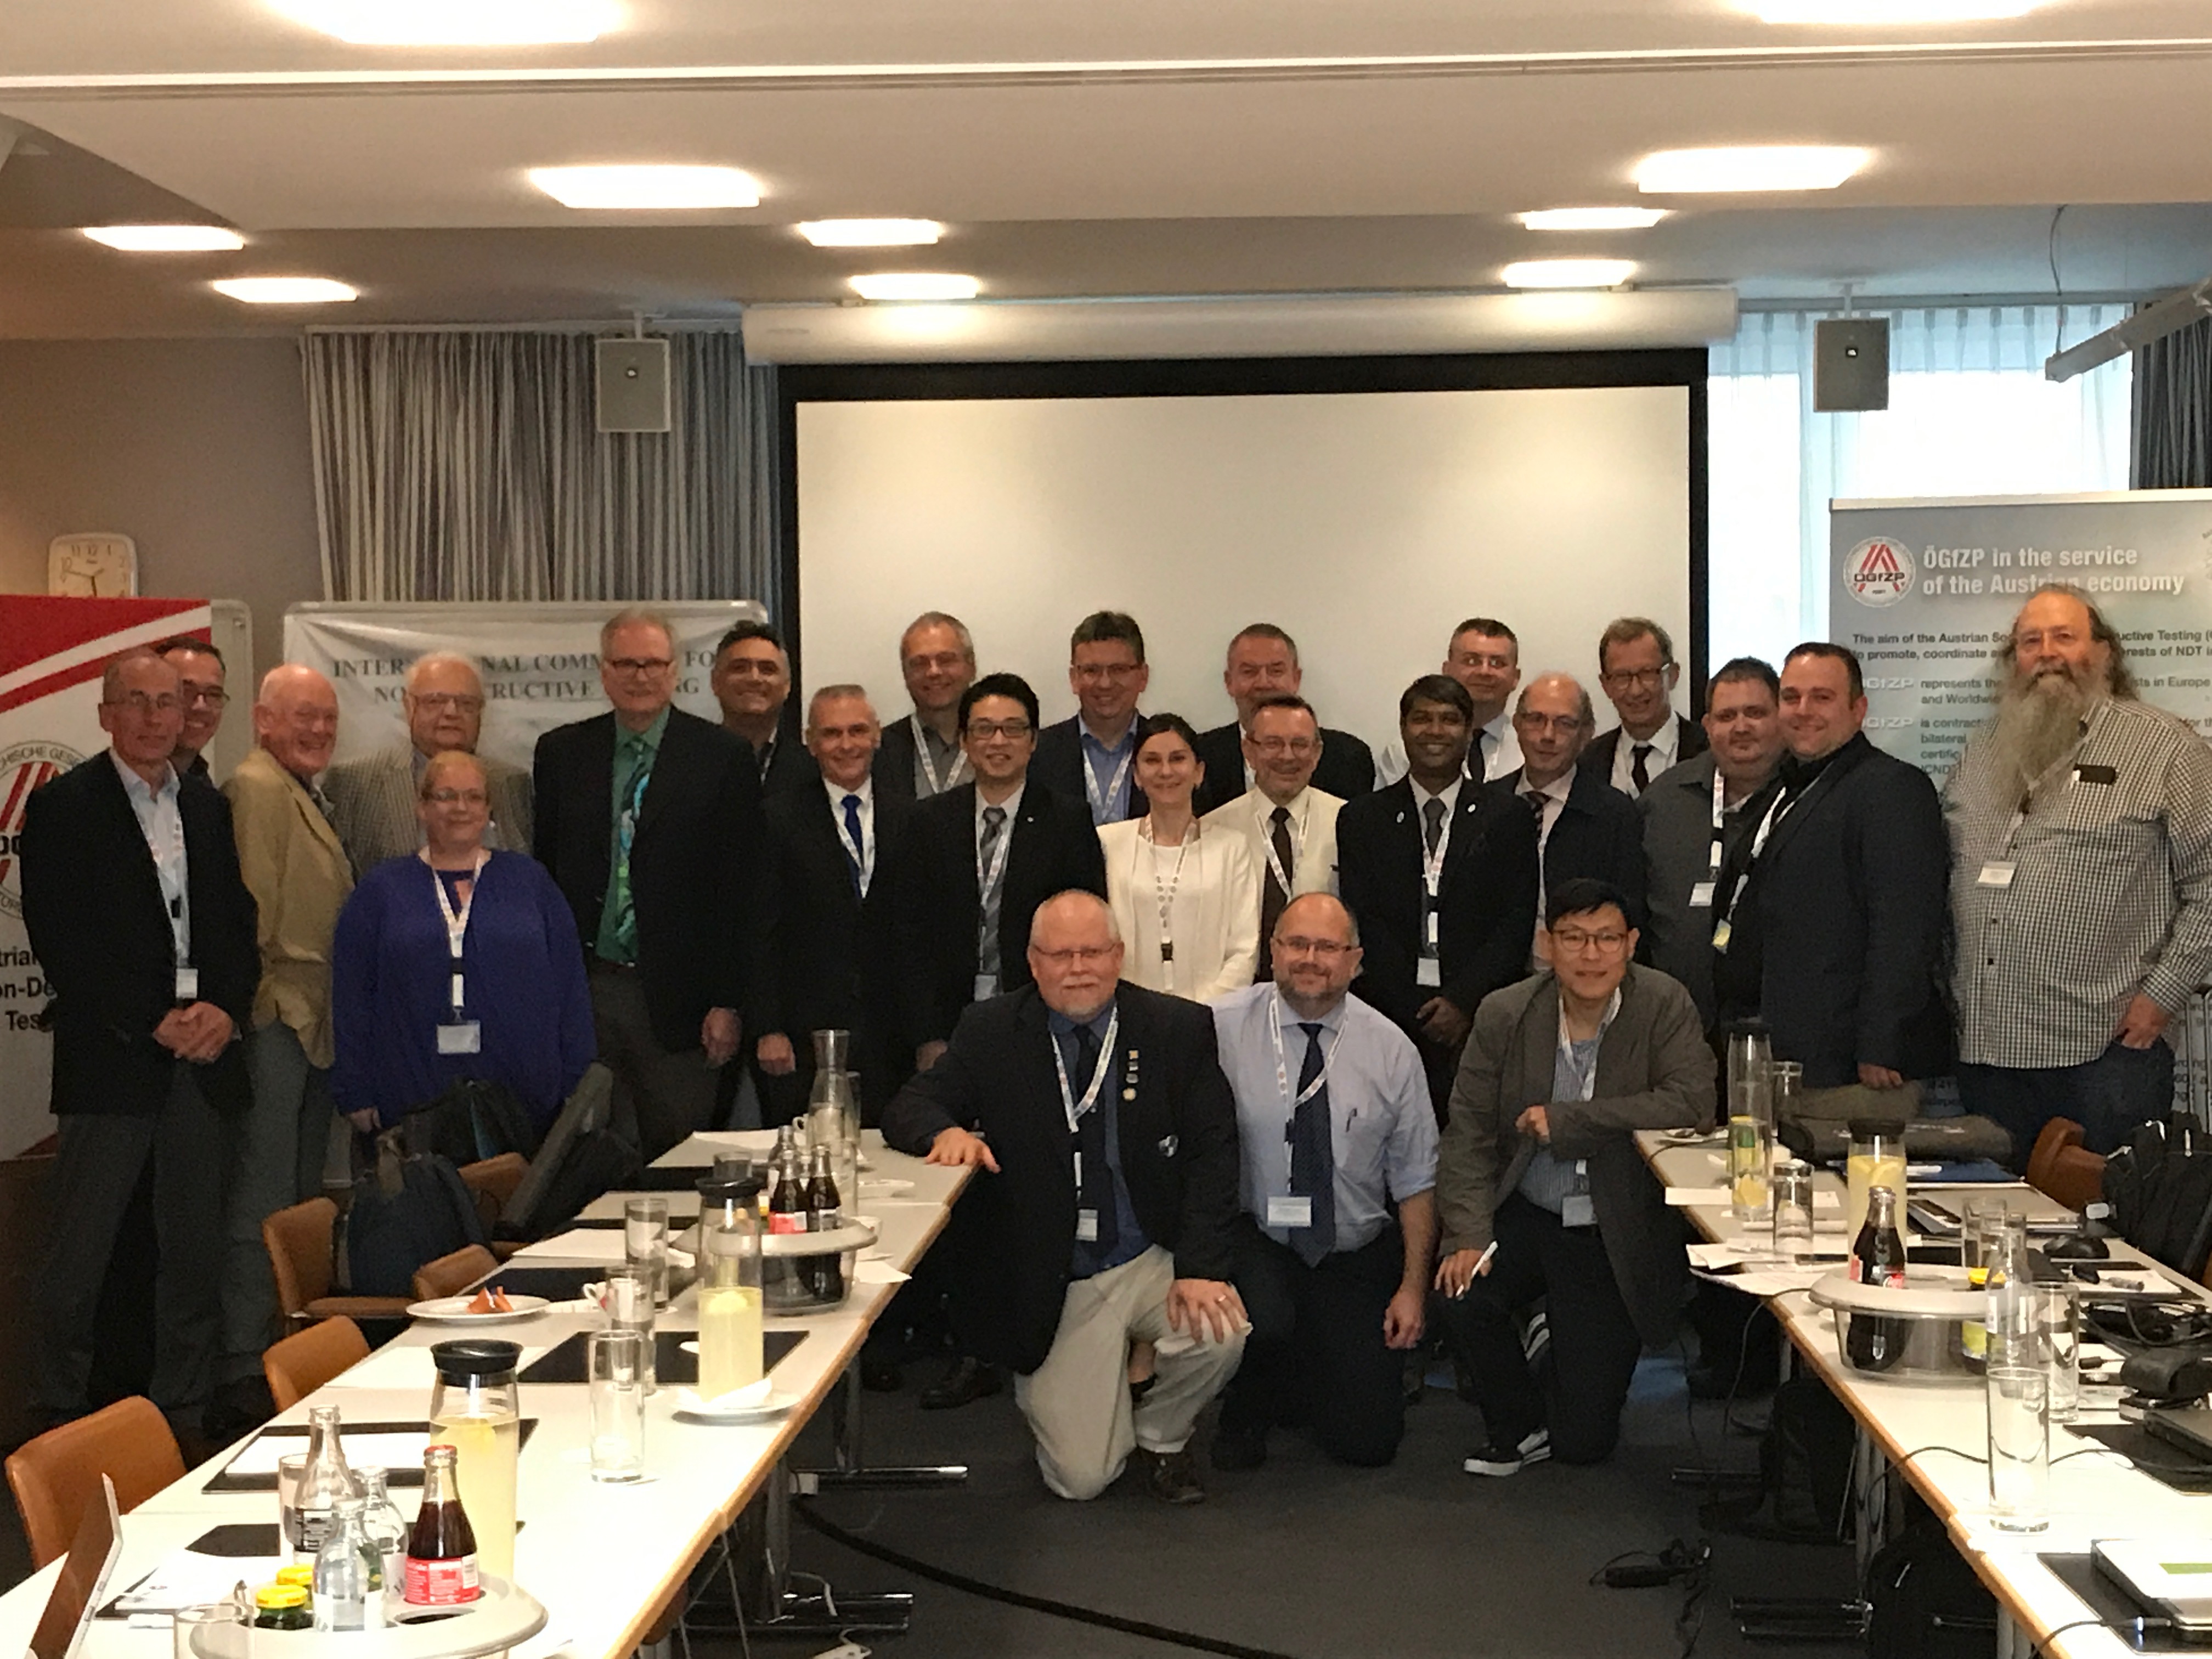 Заседание рабочей группы WG1 ICNDT по квалификации и сертификации персонала НК в рамках международной конференции «Сертификация 2017», Вена, Австрия, июнь 2017 года